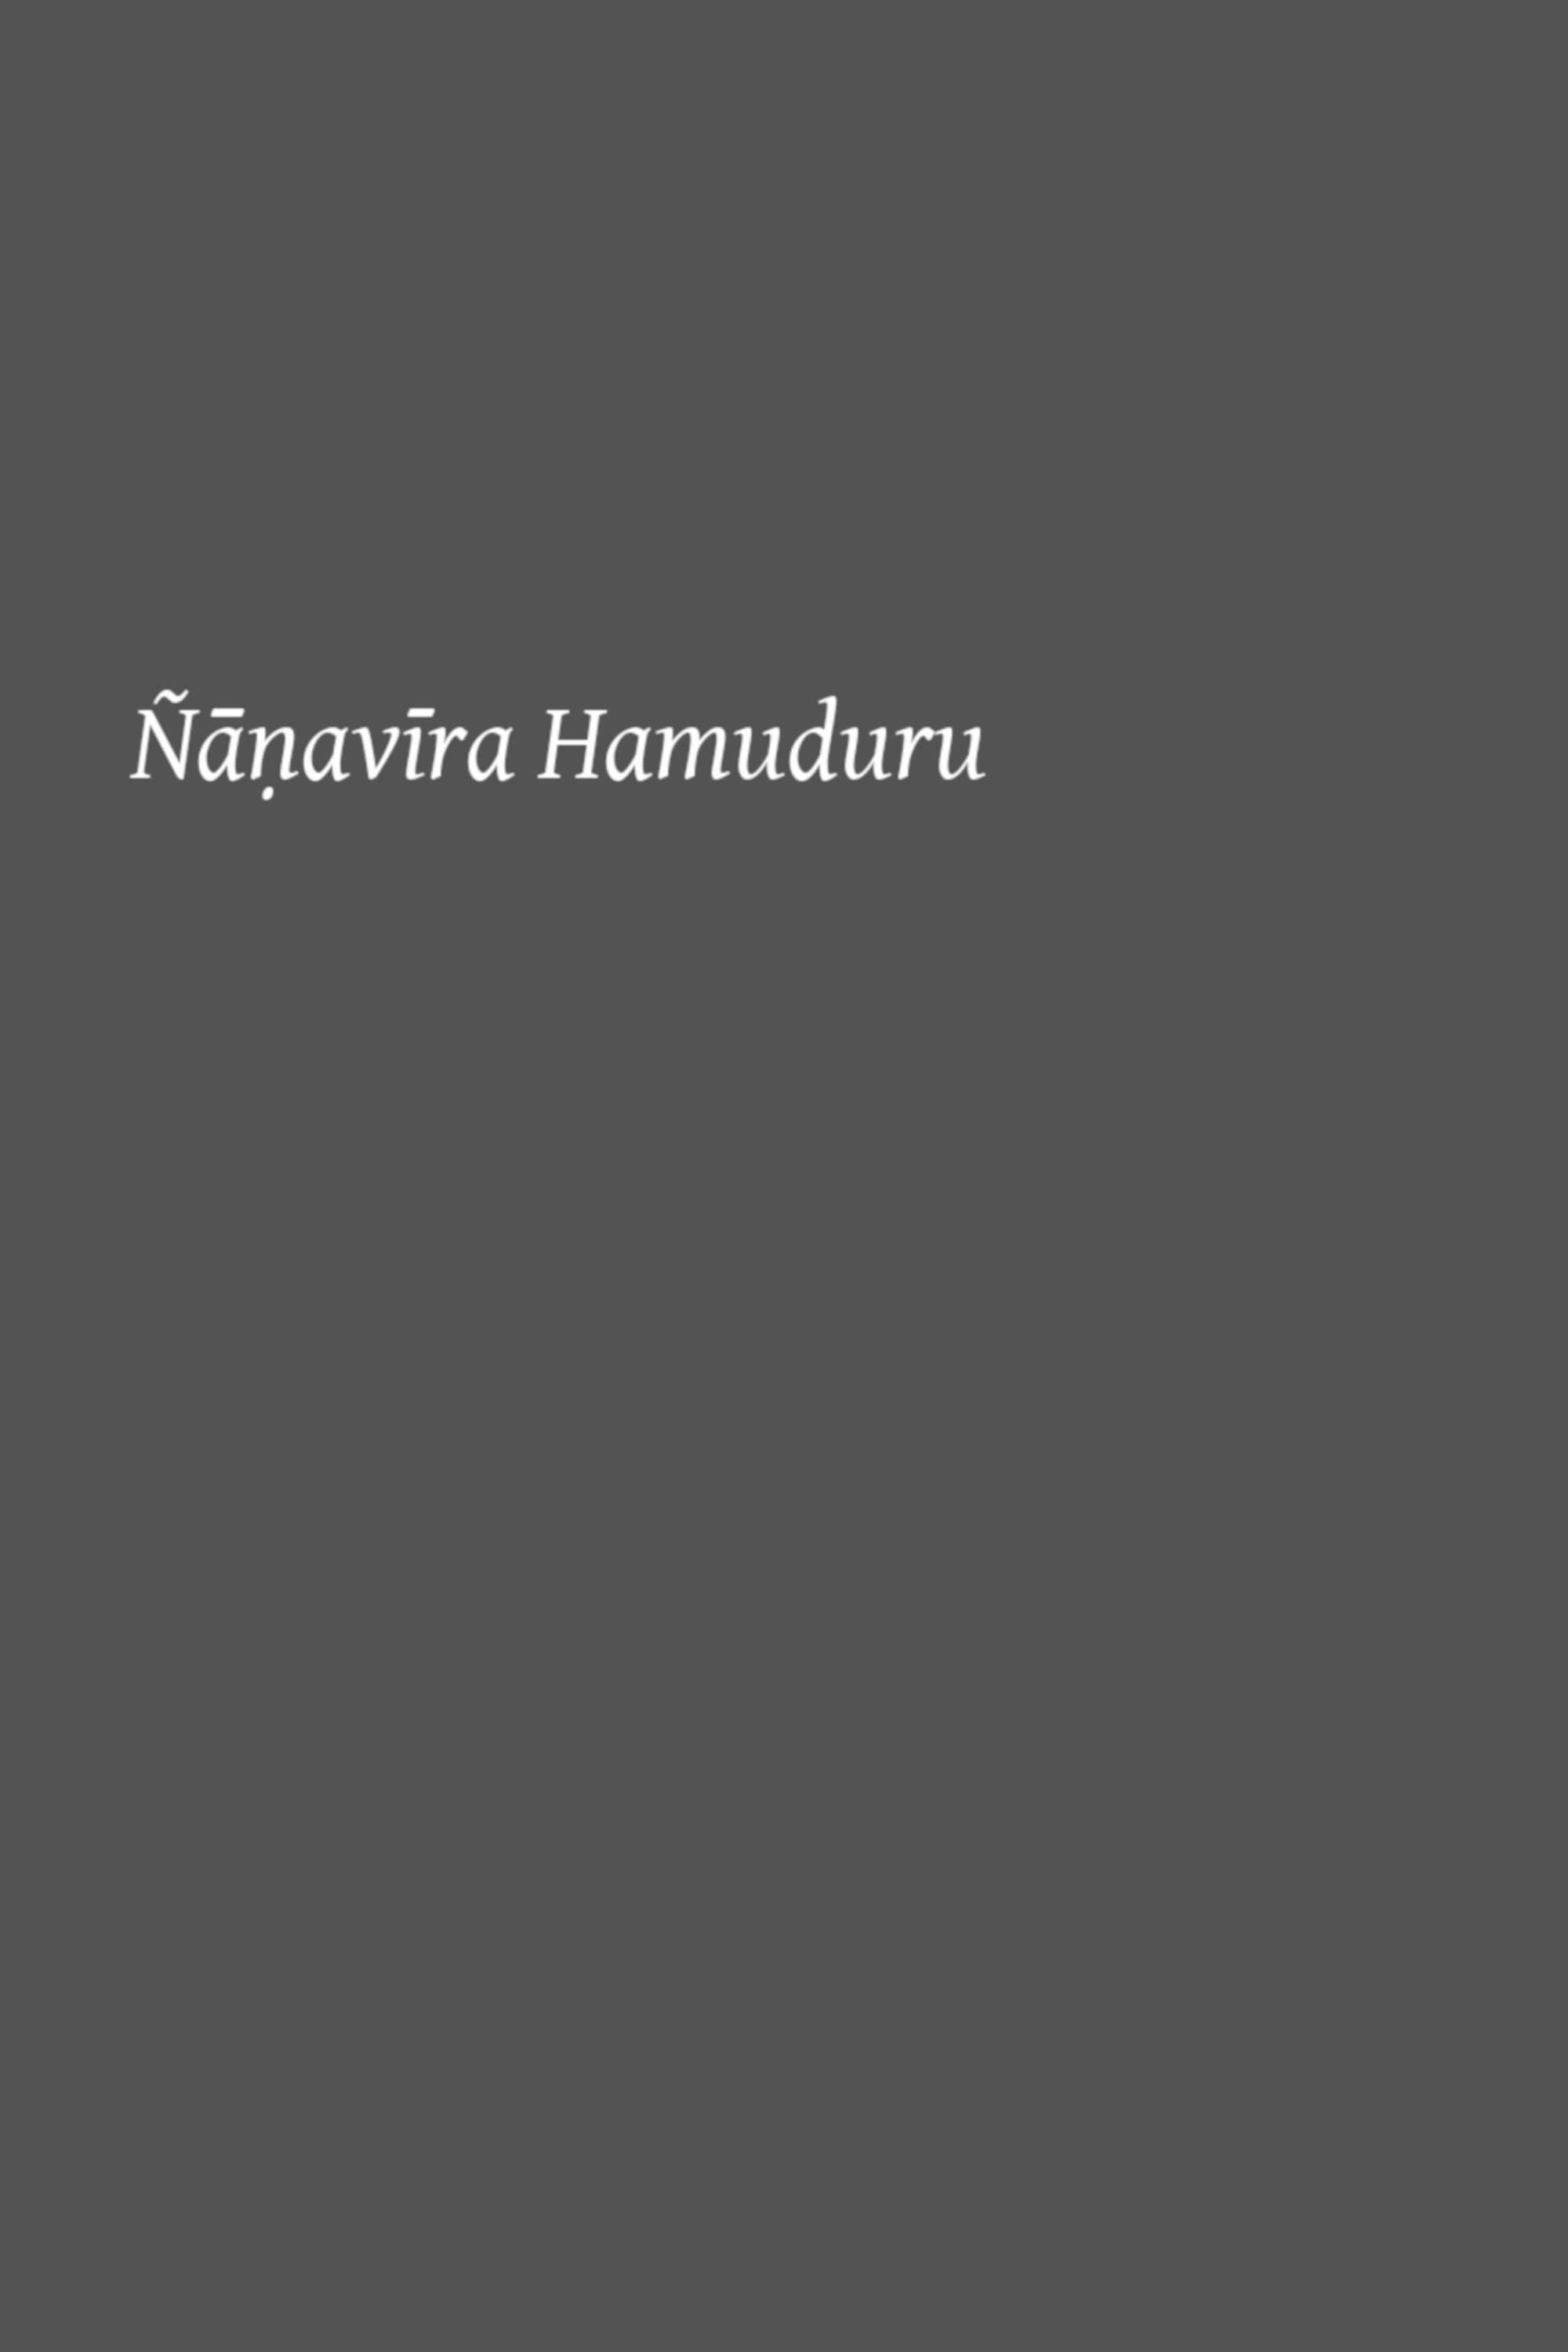 Nanavira Hamuduru